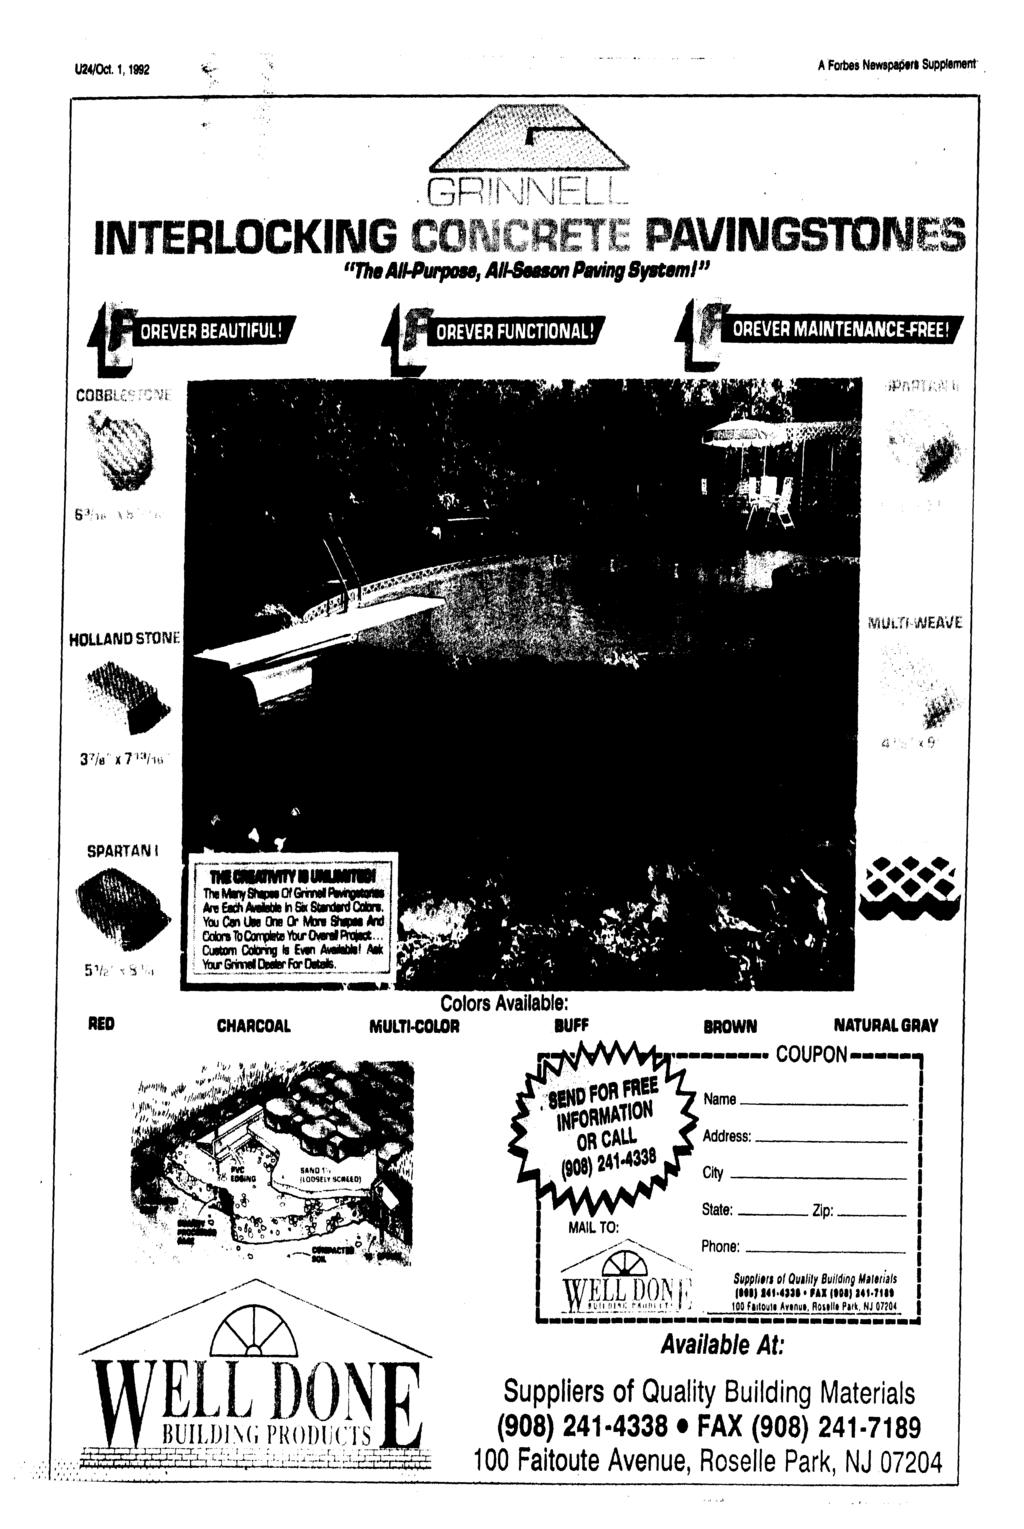 U24/OC1.1,1992 A Forbes Newspaper!